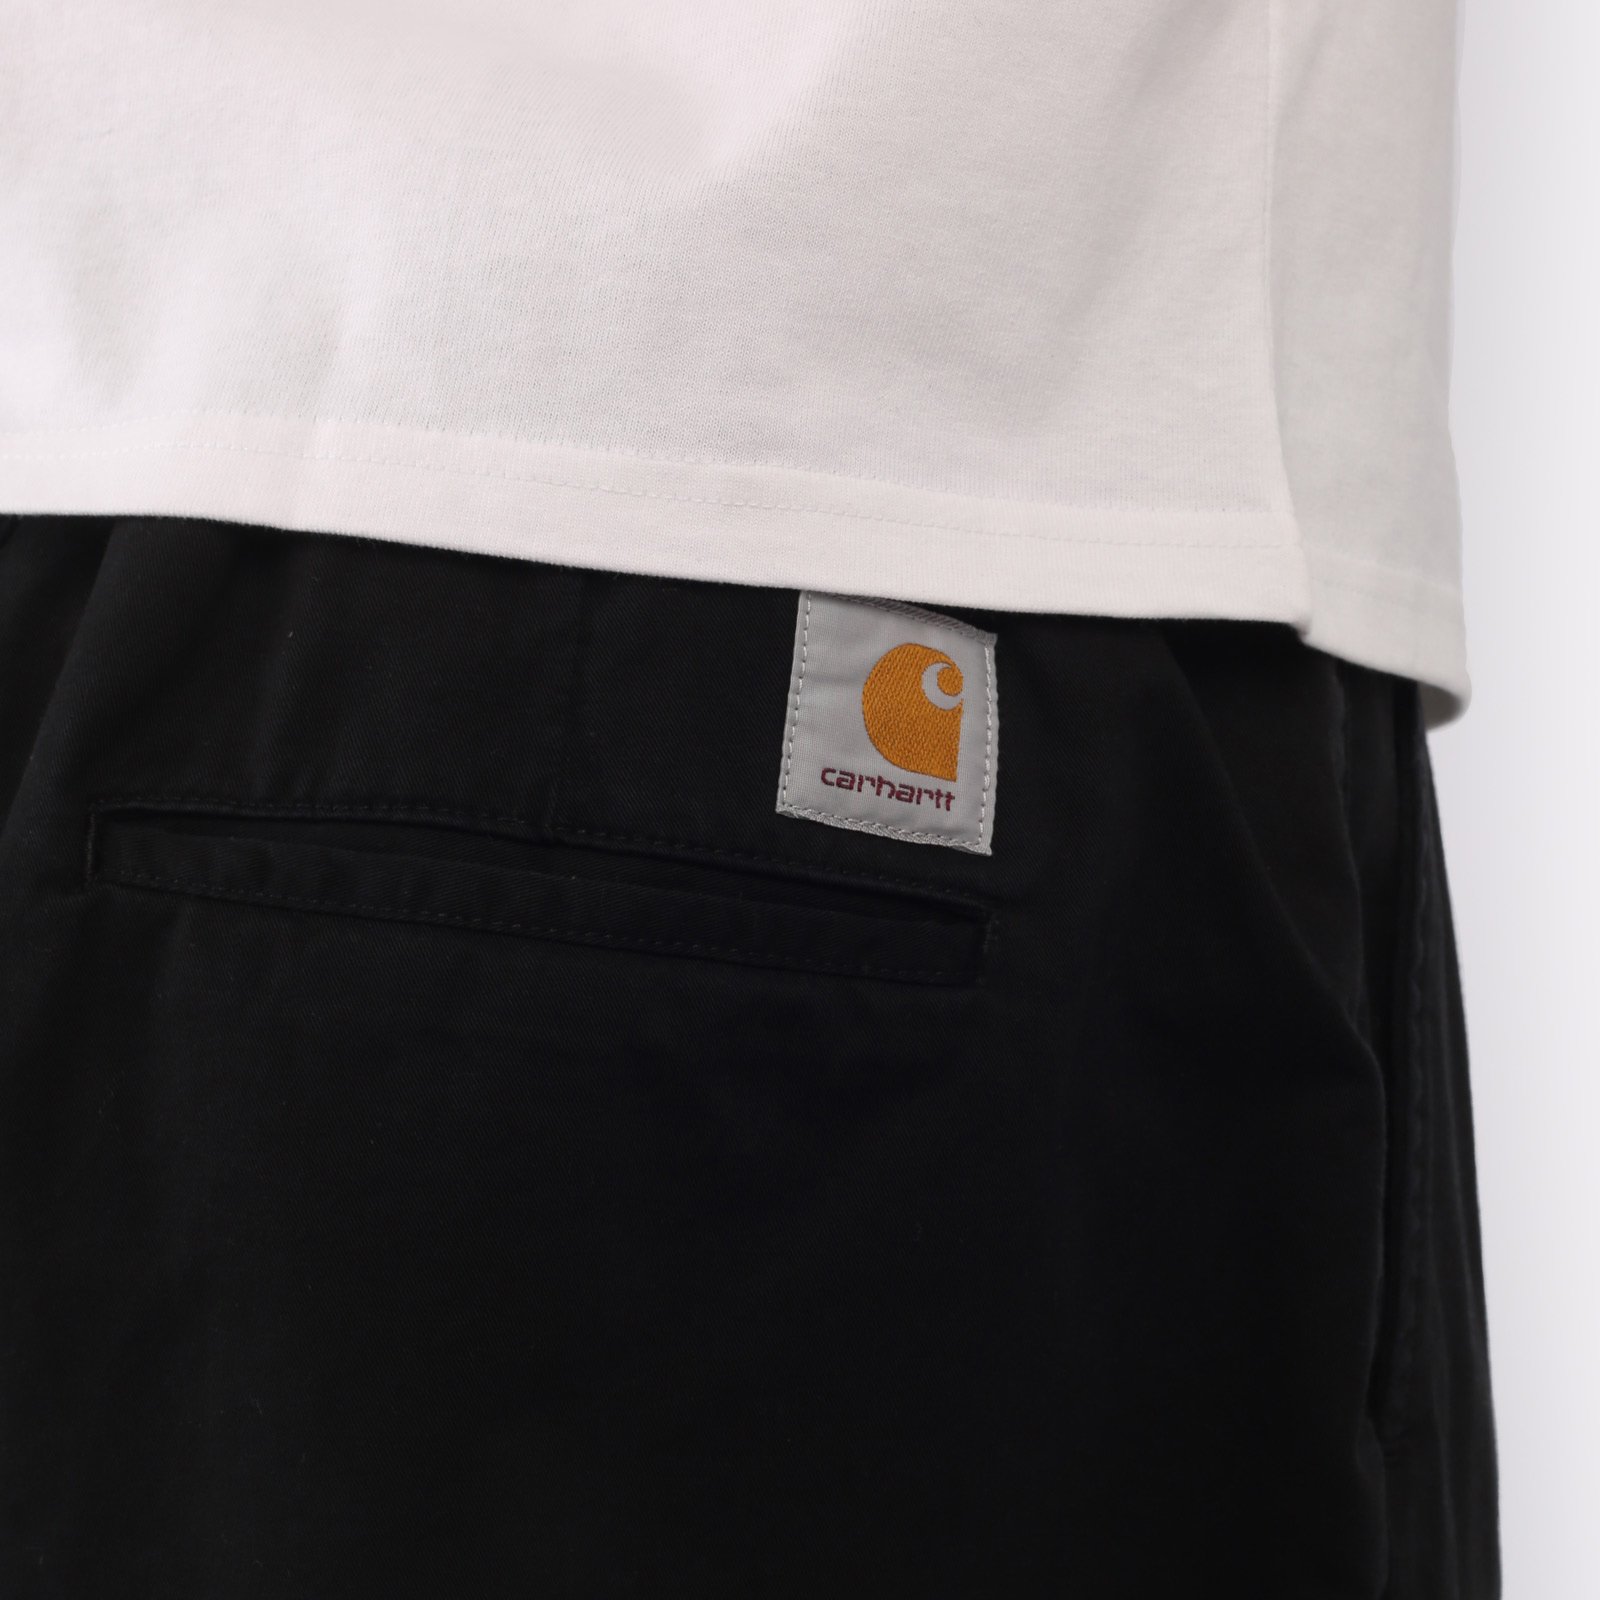 мужские брюки Carhartt WIP Marv Pant  (I033129-black)  - цена, описание, фото 5